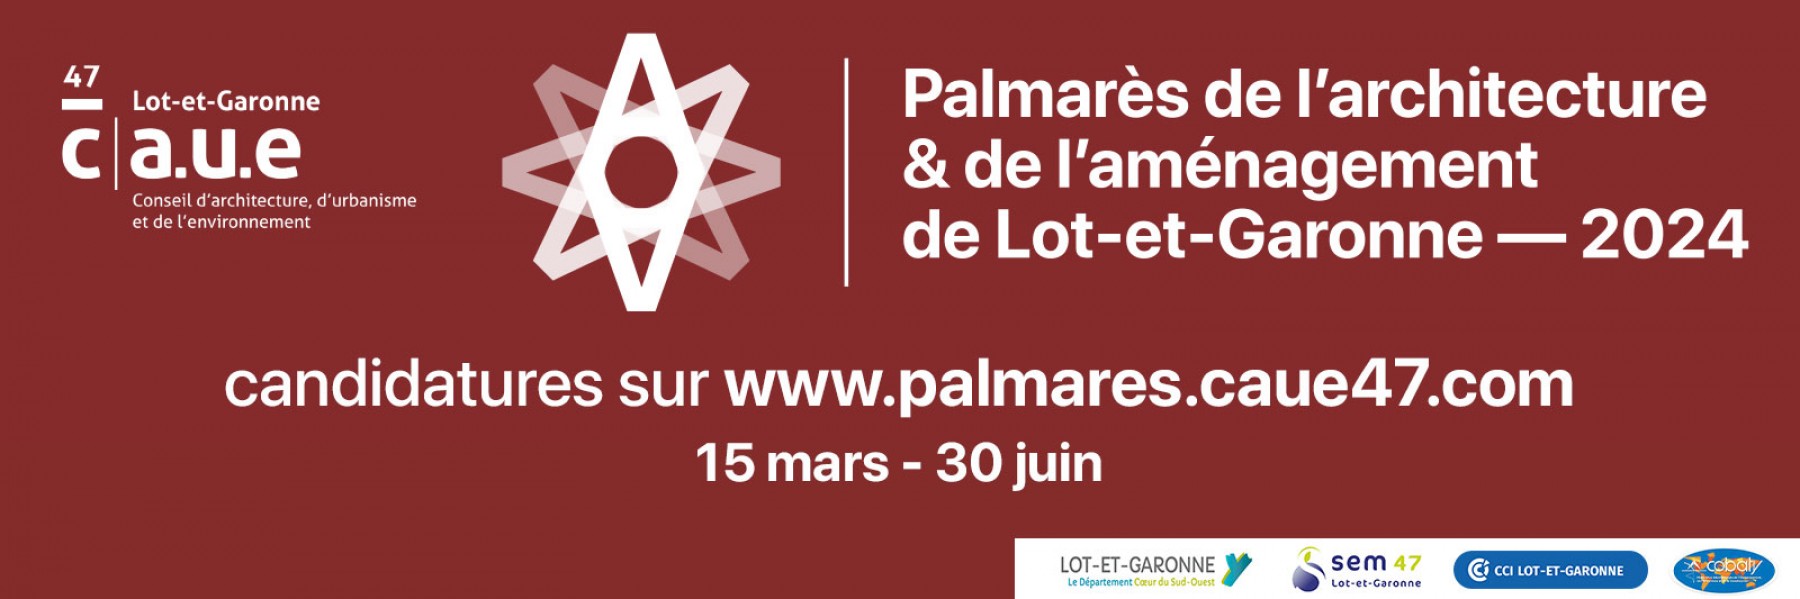 Palmarès 2024 de l'architecture et de l'aménagement de Lot-et-Garonne